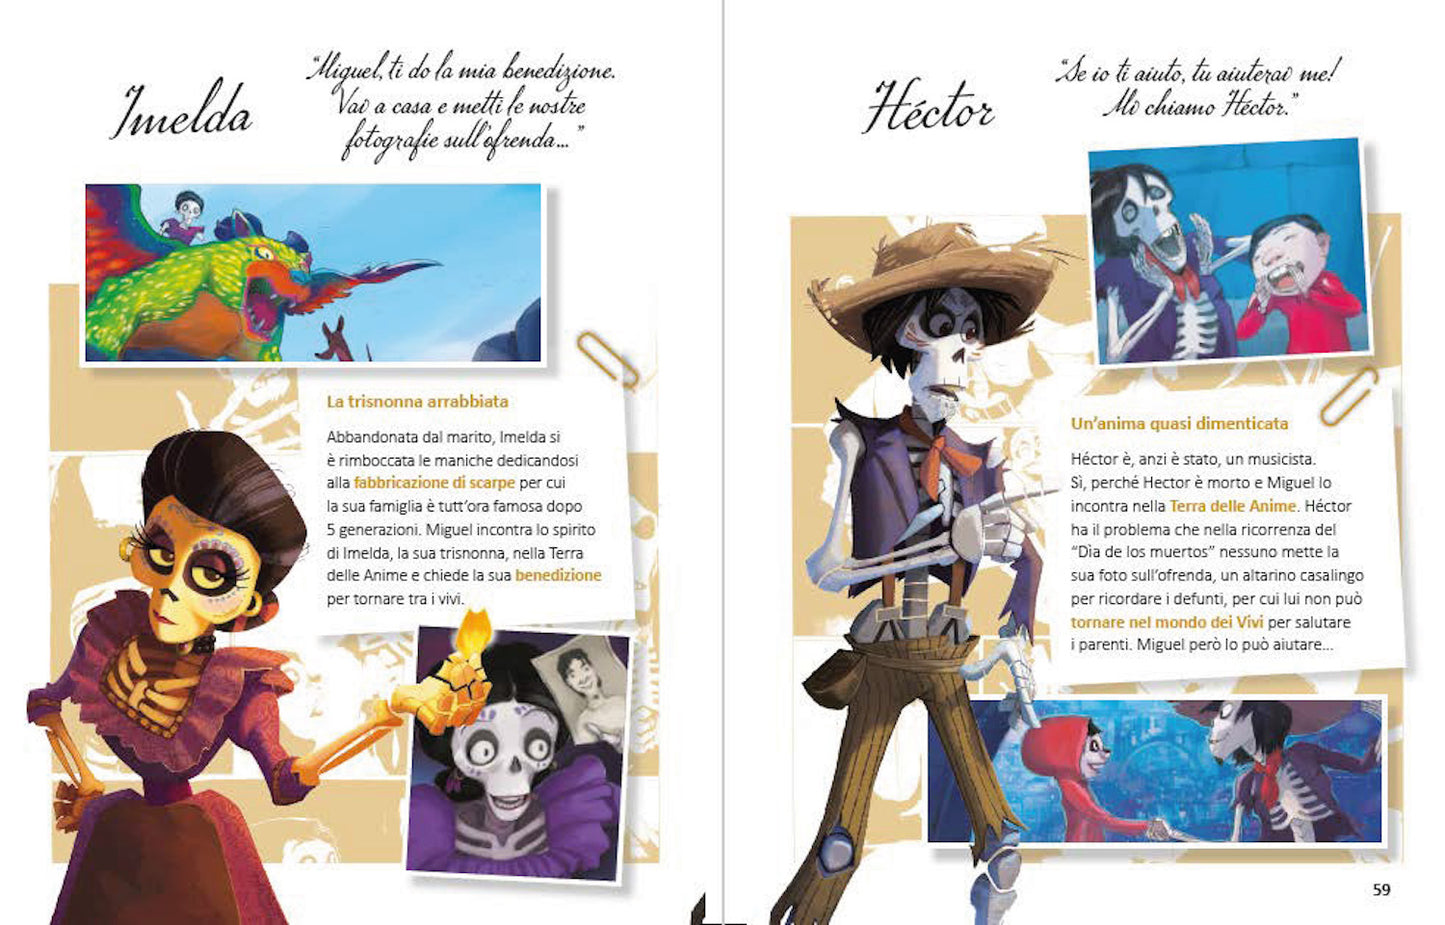 Coco La storia a fumetti Edizione limitata::Disney 100 Anni di meravigliose emozioni